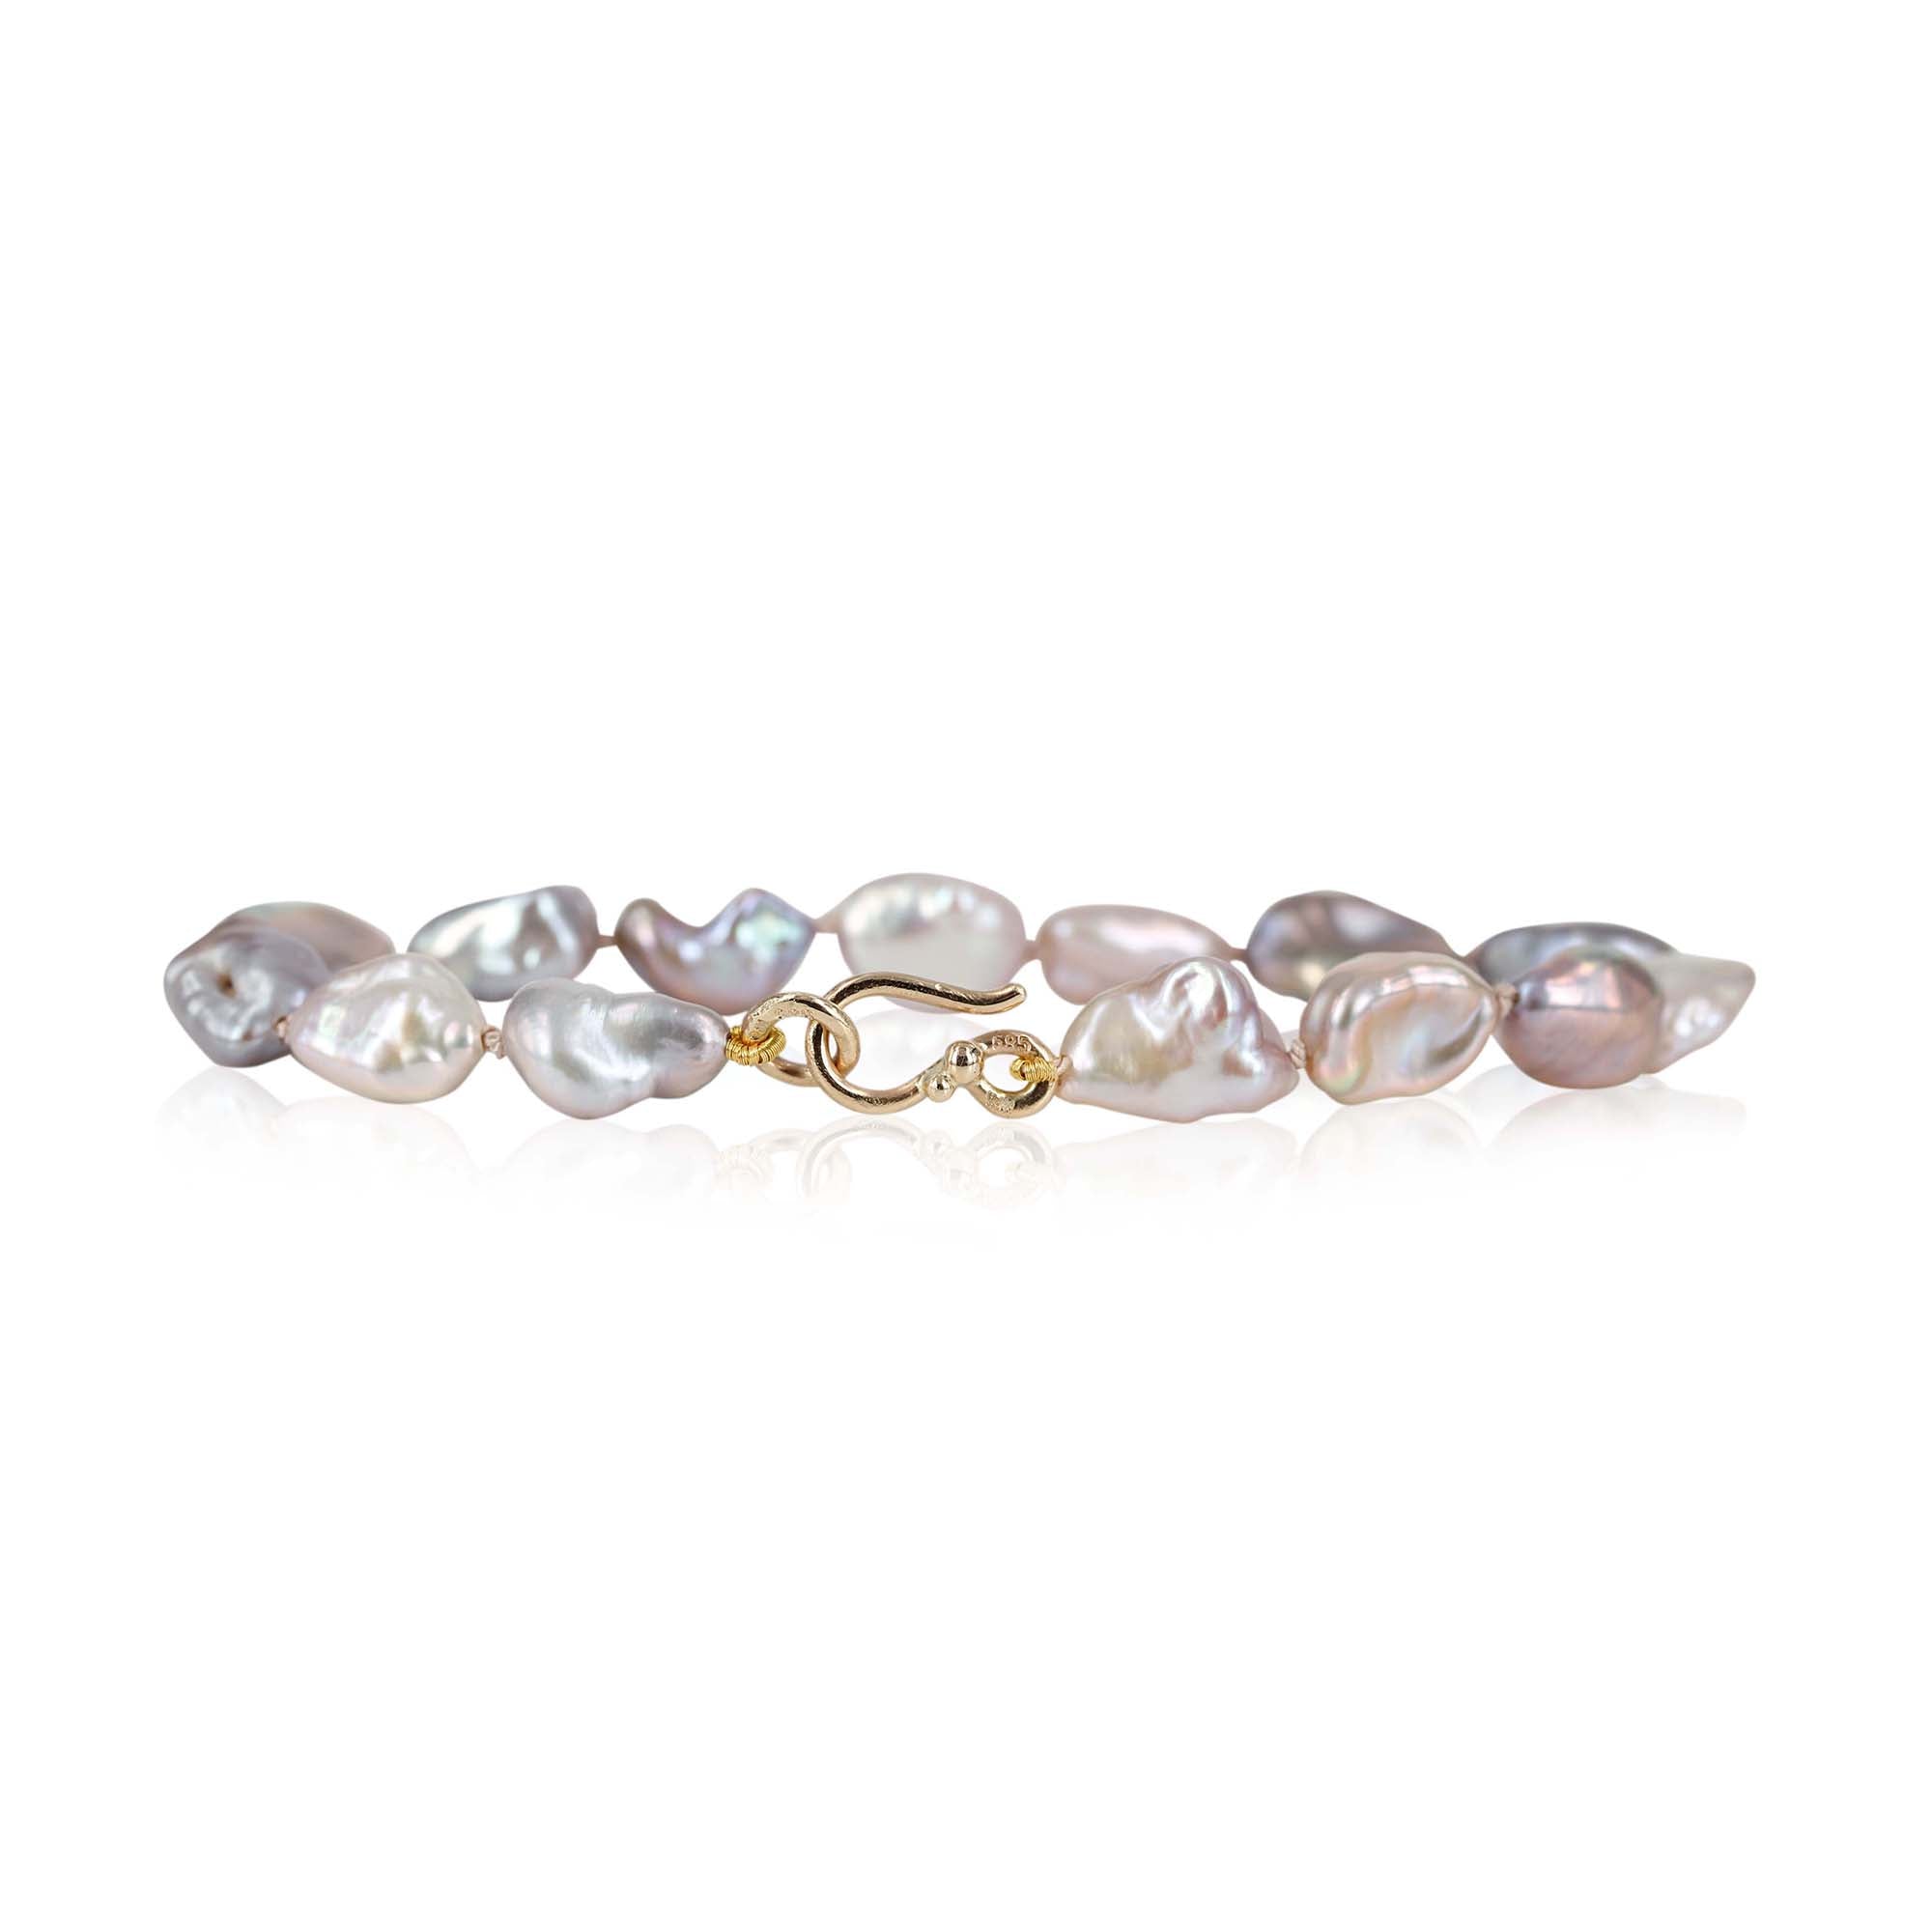 Smukt perlearmbånd med lyserøde ferskvands keshi perler, perlerne måler 6 x 10 mm ca. de har smuk perlemorsglans og skifter i farvespil fra lilla til lyserød.  Armbåndet har en fin lås i 14 kt. guld med guldkulger